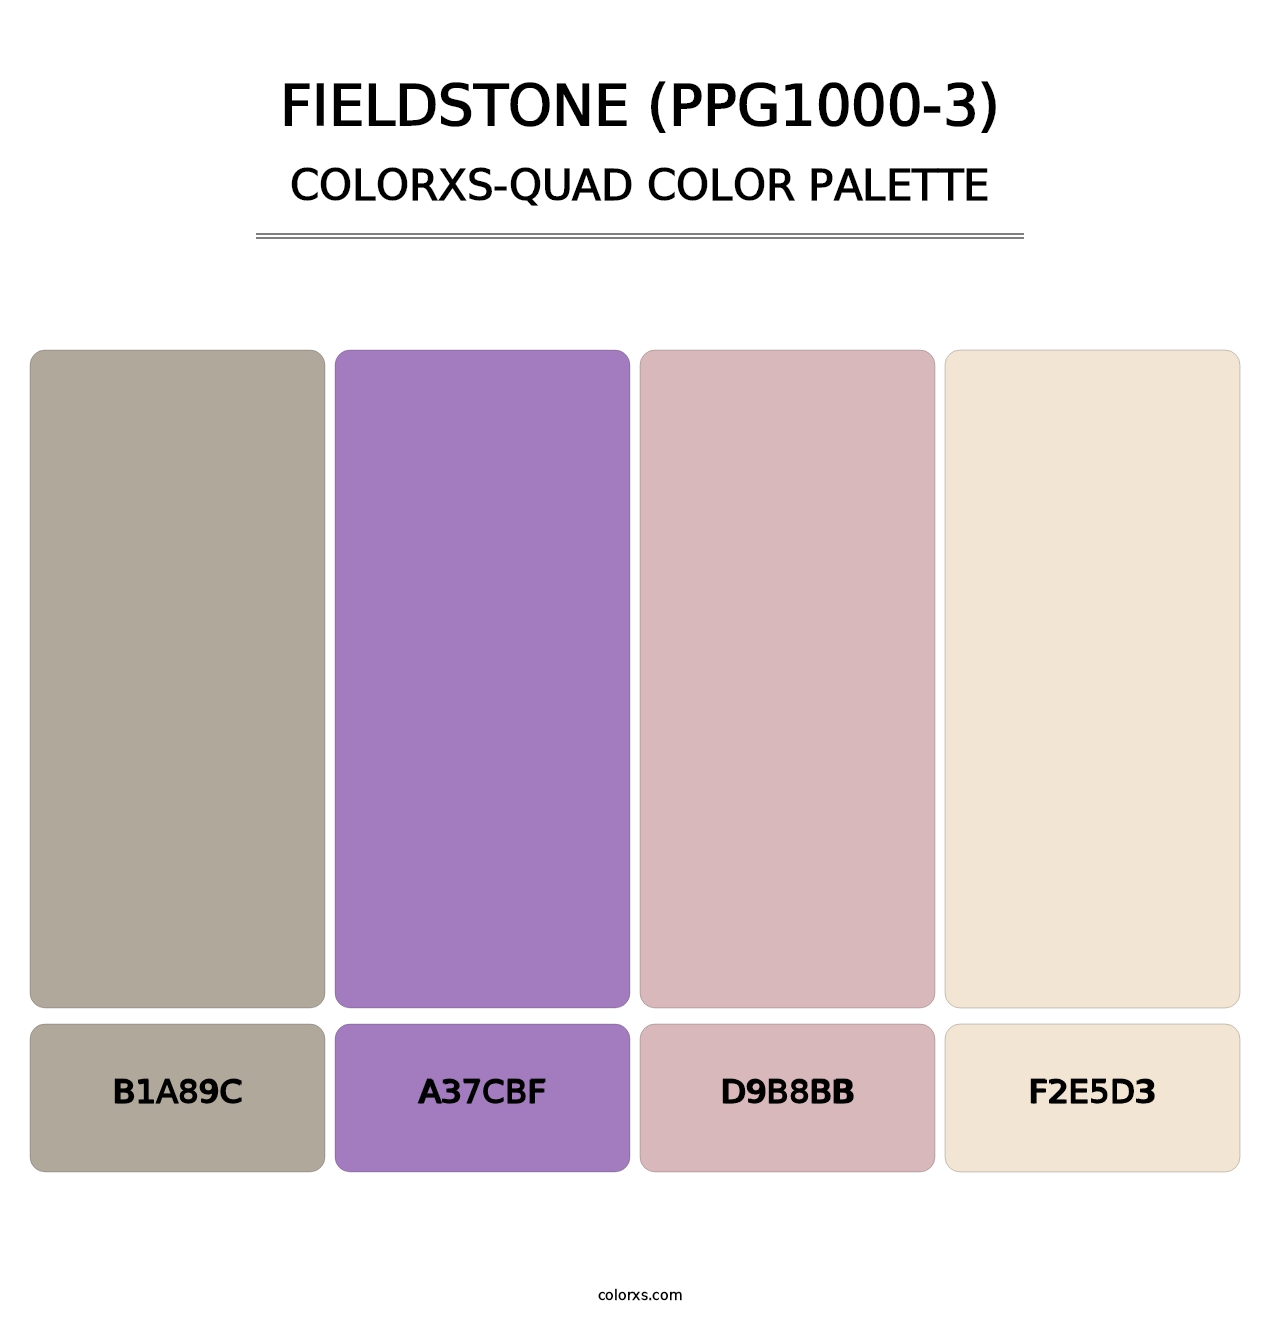 Fieldstone (PPG1000-3) - Colorxs Quad Palette